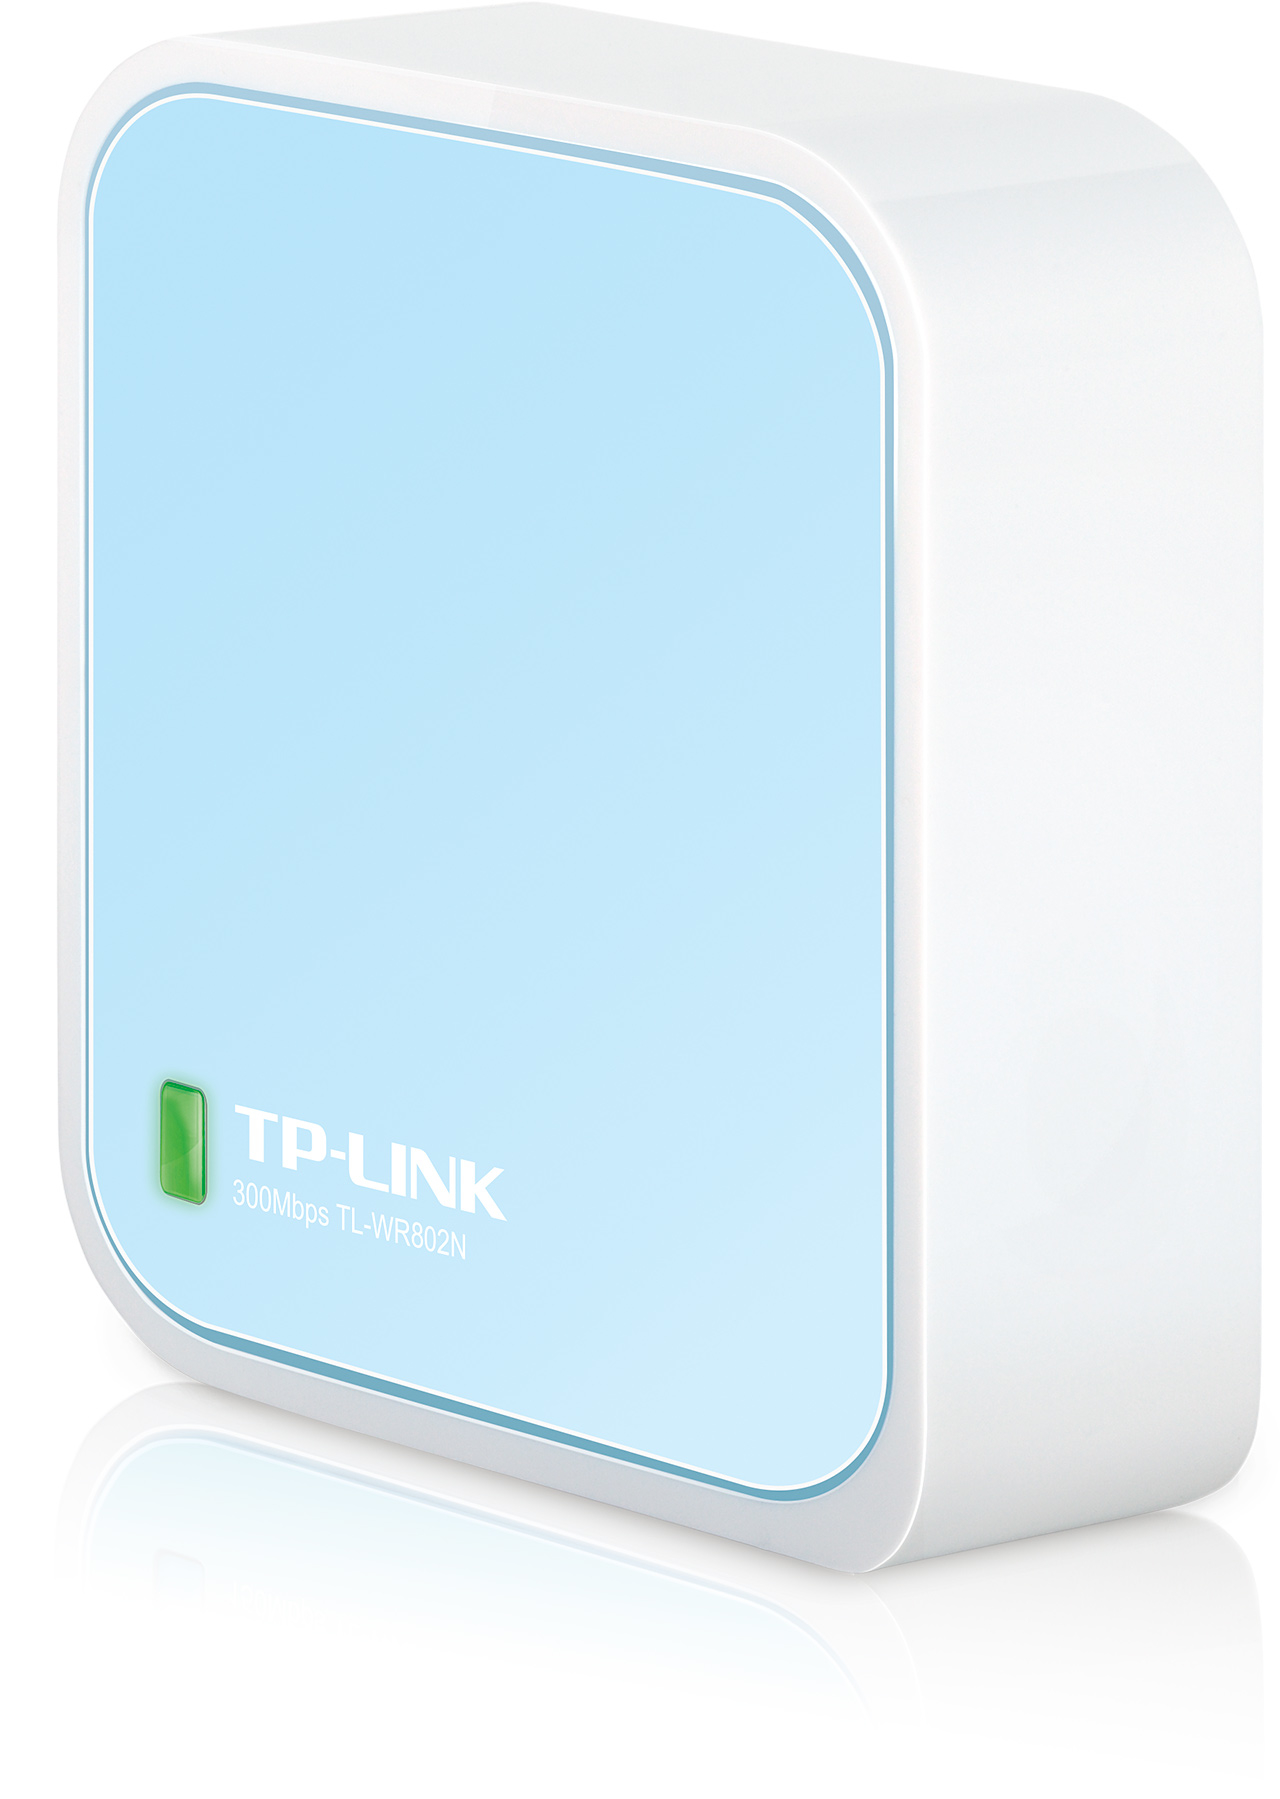 TP-LINK WLAN N Mini Pocket AP Router TLWR802N 300Mbps 300Mbps